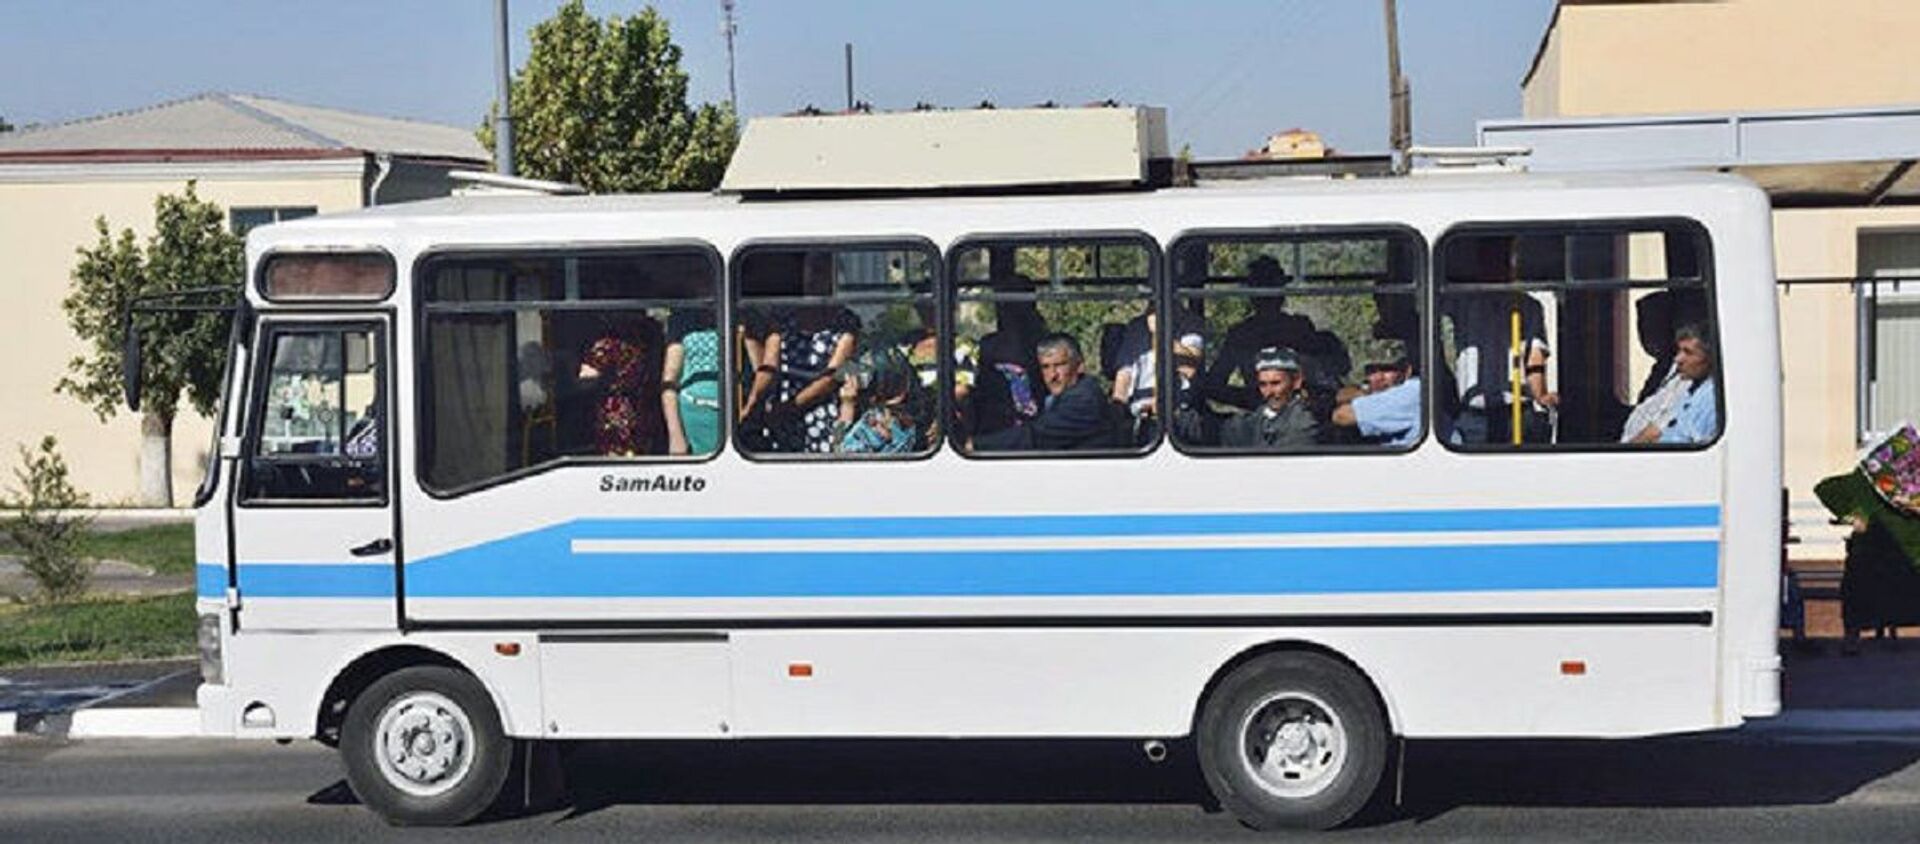 Автобус - Sputnik Узбекистан, 1920, 07.10.2020